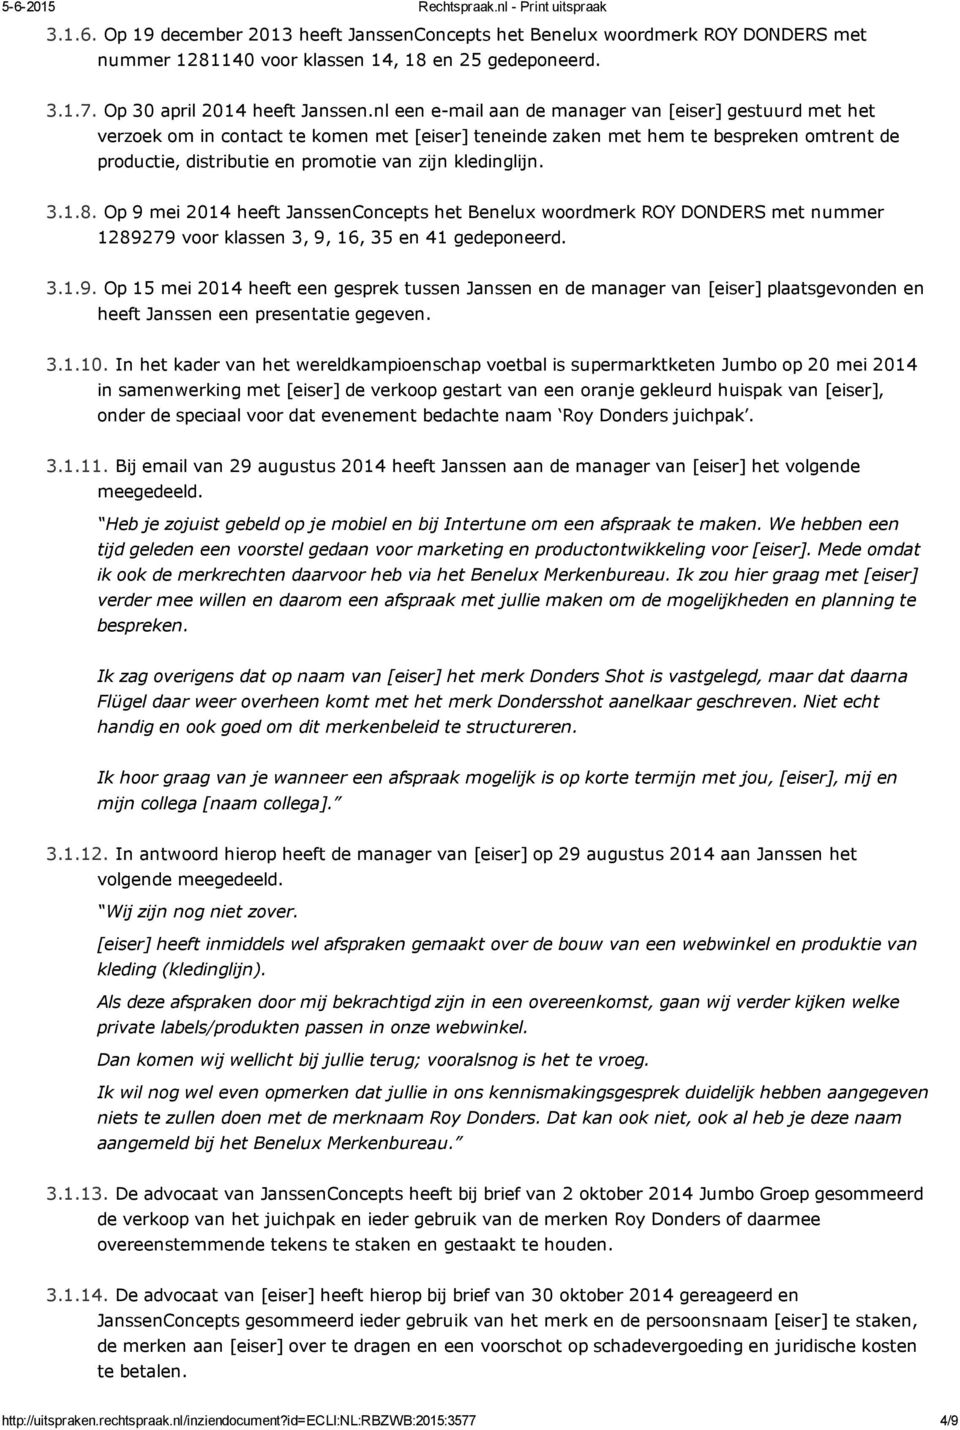 kledinglijn. 3.1.8. Op 9 mei 2014 heeft JanssenConcepts het Benelux woordmerk ROY DONDERS met nummer 1289279 voor klassen 3, 9, 16, 35 en 41 gedeponeerd. 3.1.9. Op 15 mei 2014 heeft een gesprek tussen Janssen en de manager van [eiser] plaatsgevonden en heeft Janssen een presentatie gegeven.